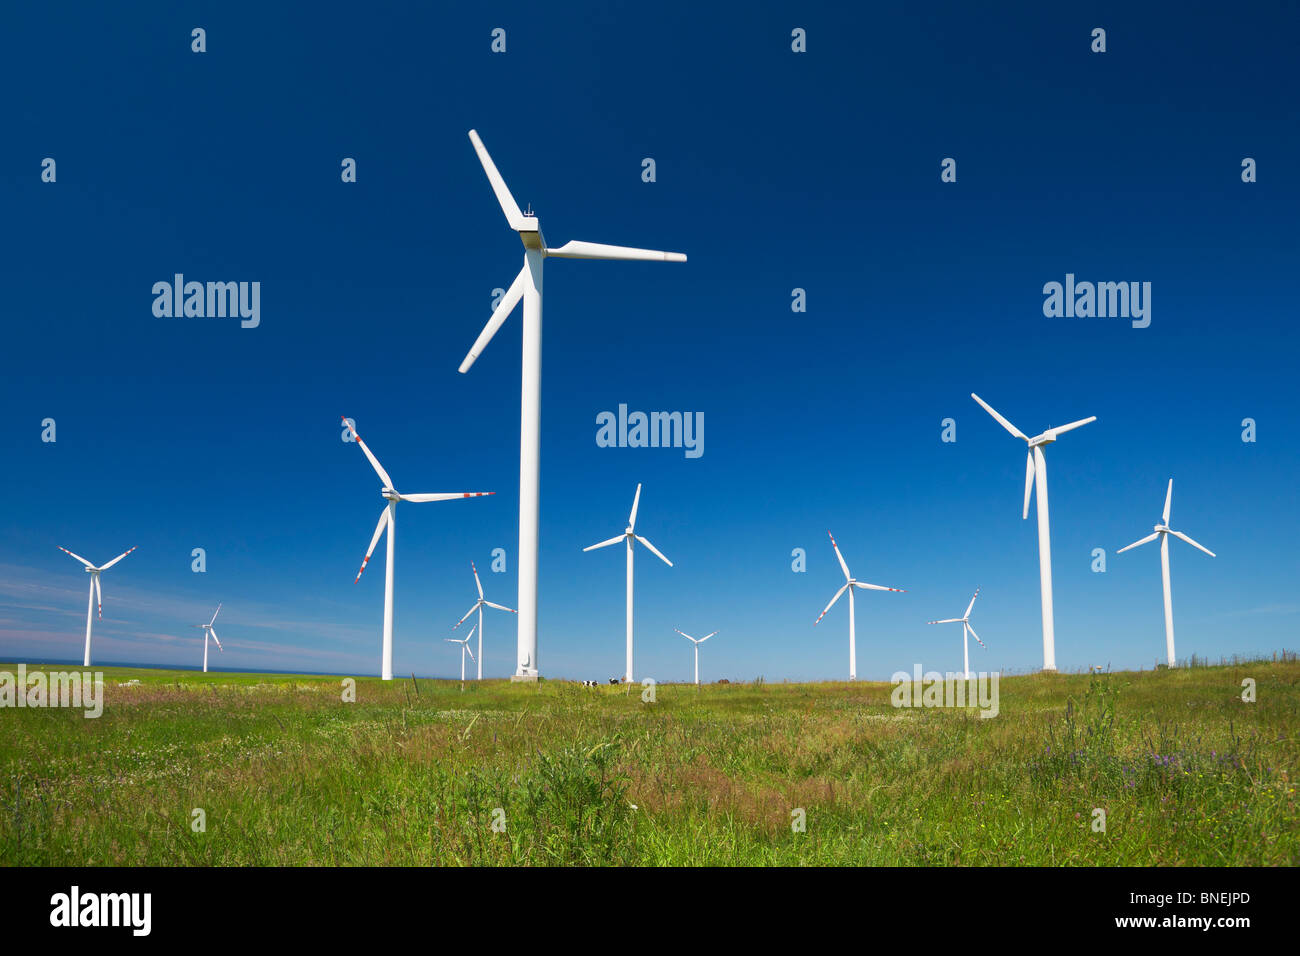 Wind turbine, wind farm, Pomerania, Poland Stock Photo